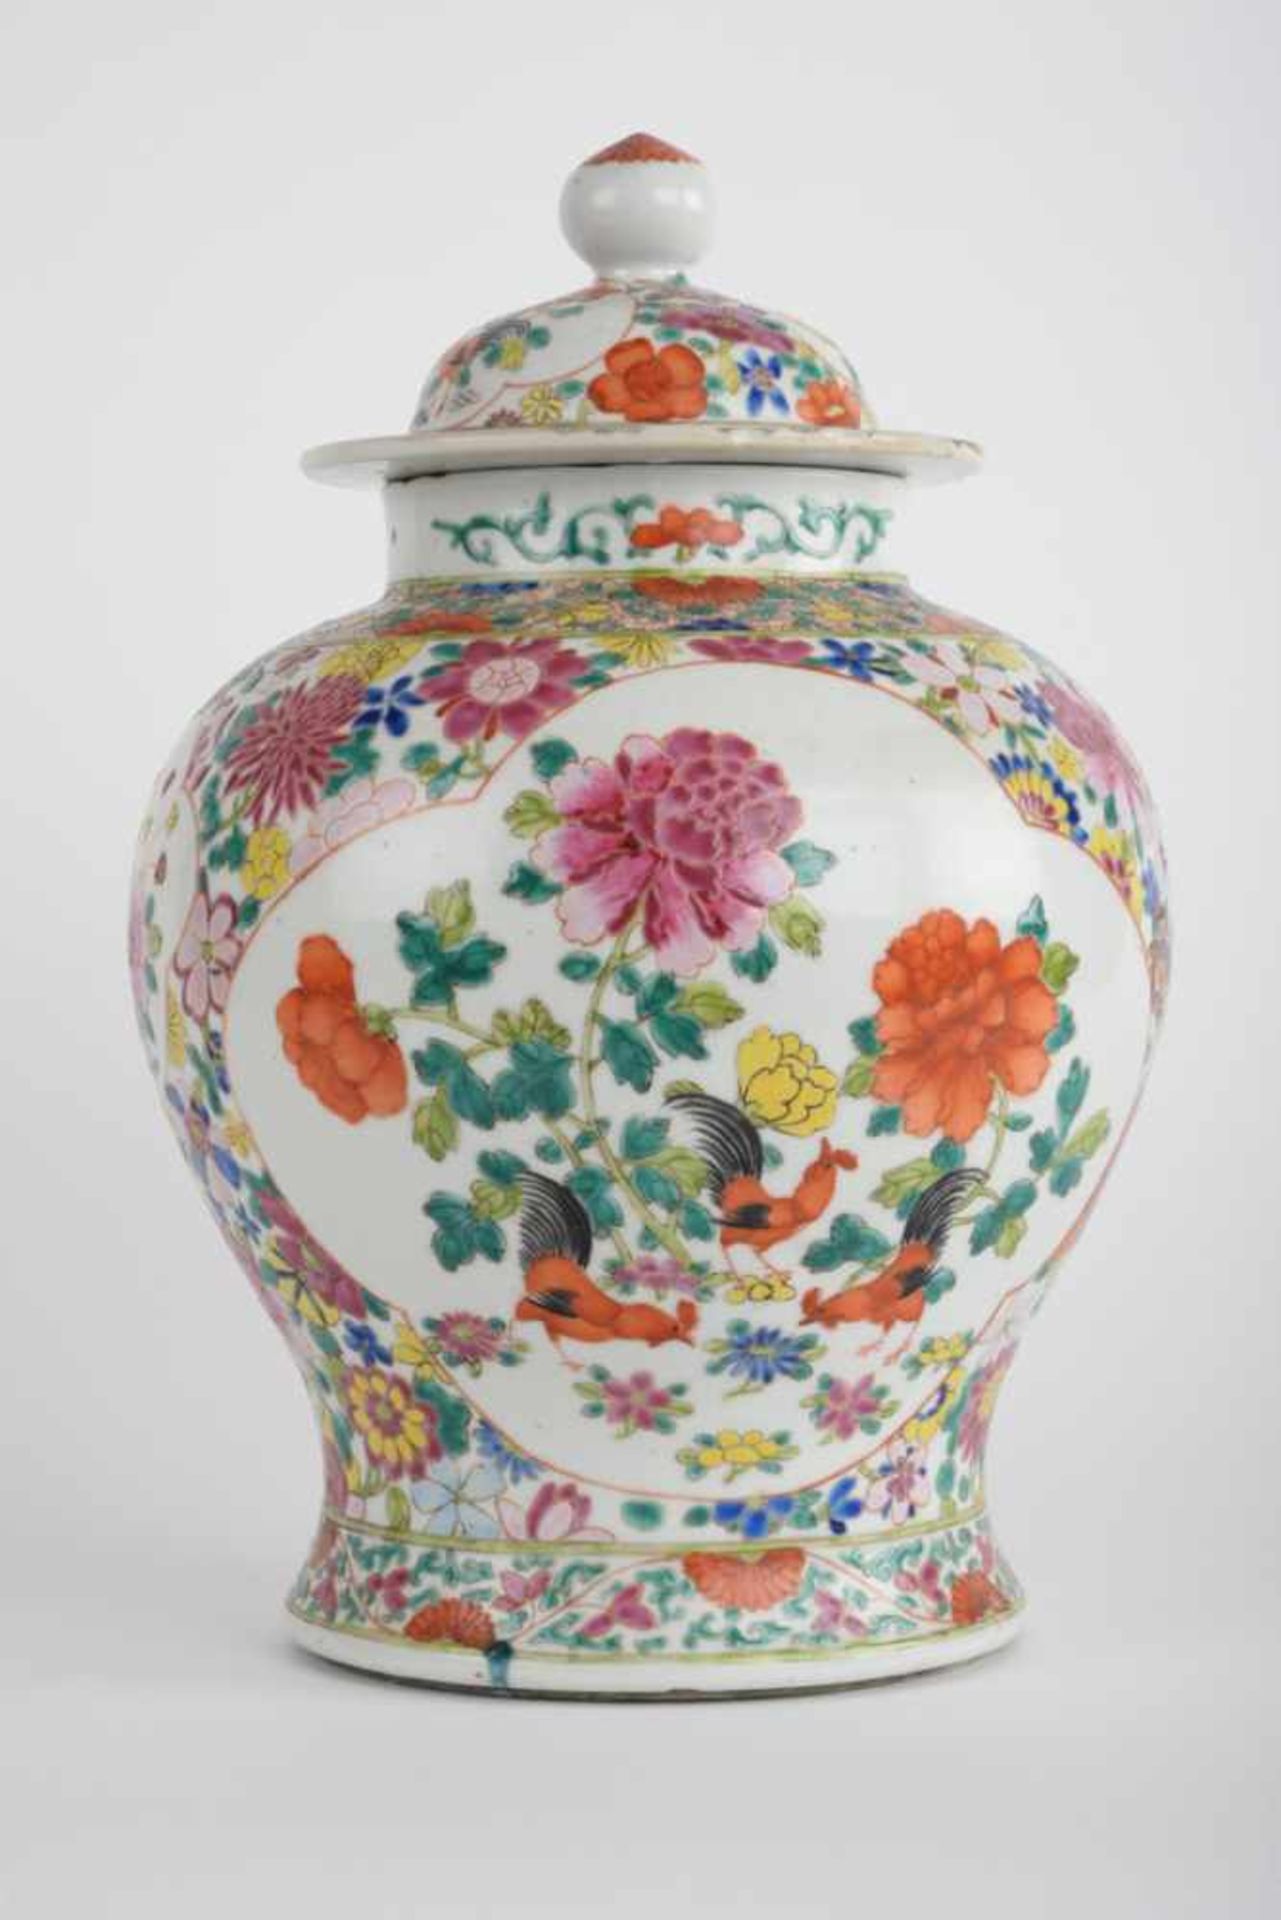 Bauchige Vase / Deckelvase. China, blaue Kangxi-Marke, Datierung Chien Lung. Bemalung in